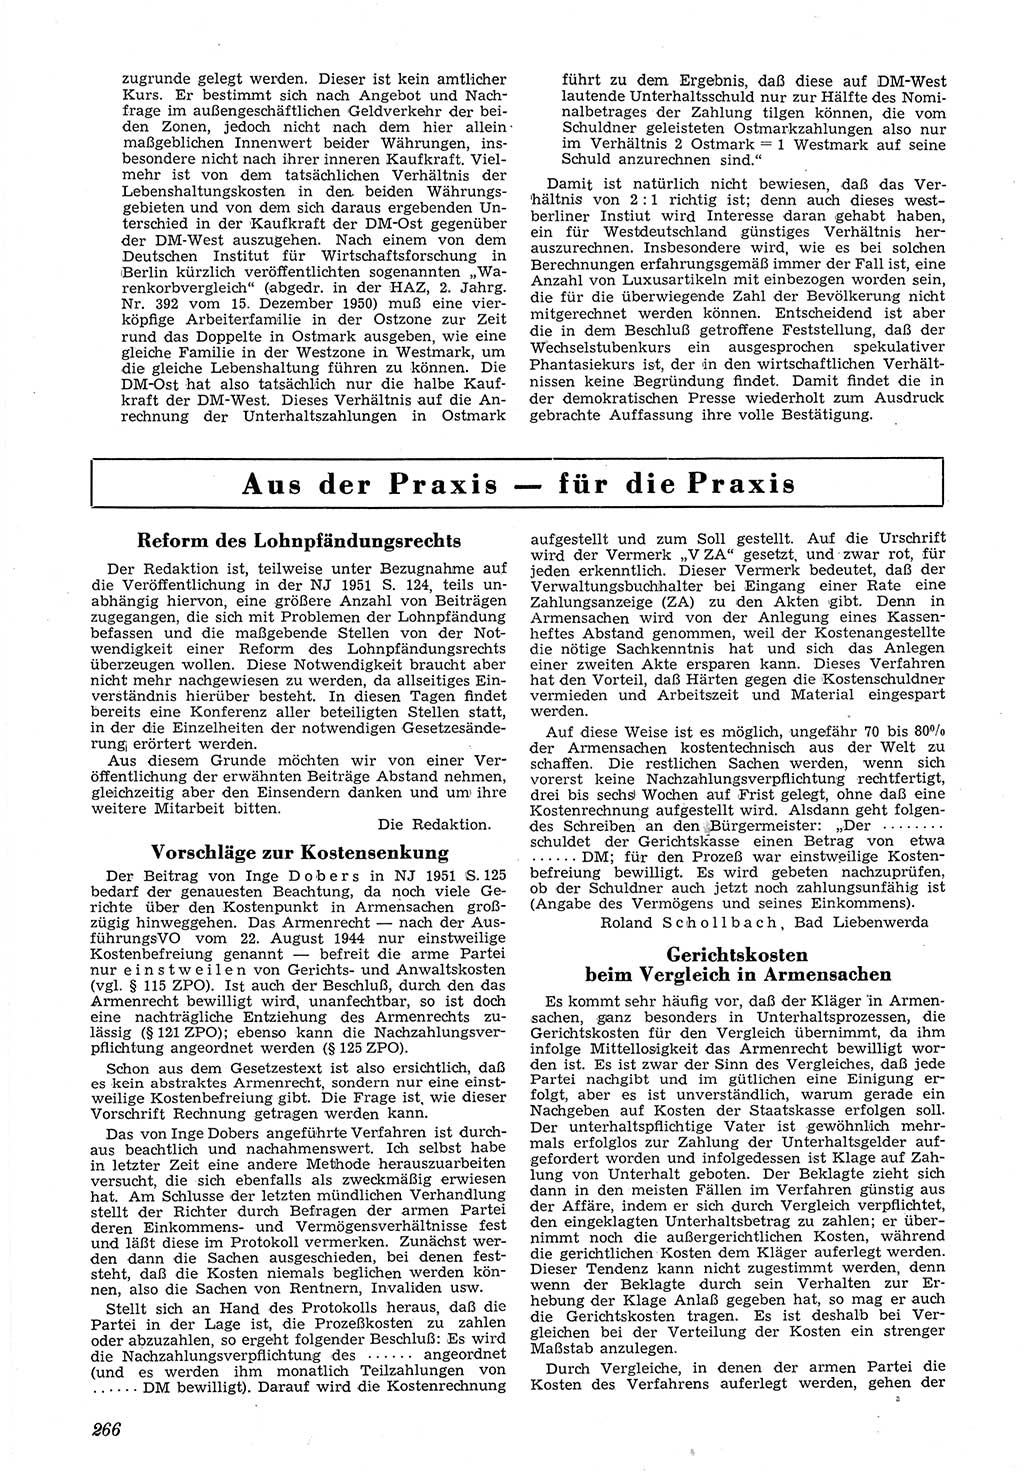 Neue Justiz (NJ), Zeitschrift für Recht und Rechtswissenschaft [Deutsche Demokratische Republik (DDR)], 5. Jahrgang 1951, Seite 266 (NJ DDR 1951, S. 266)